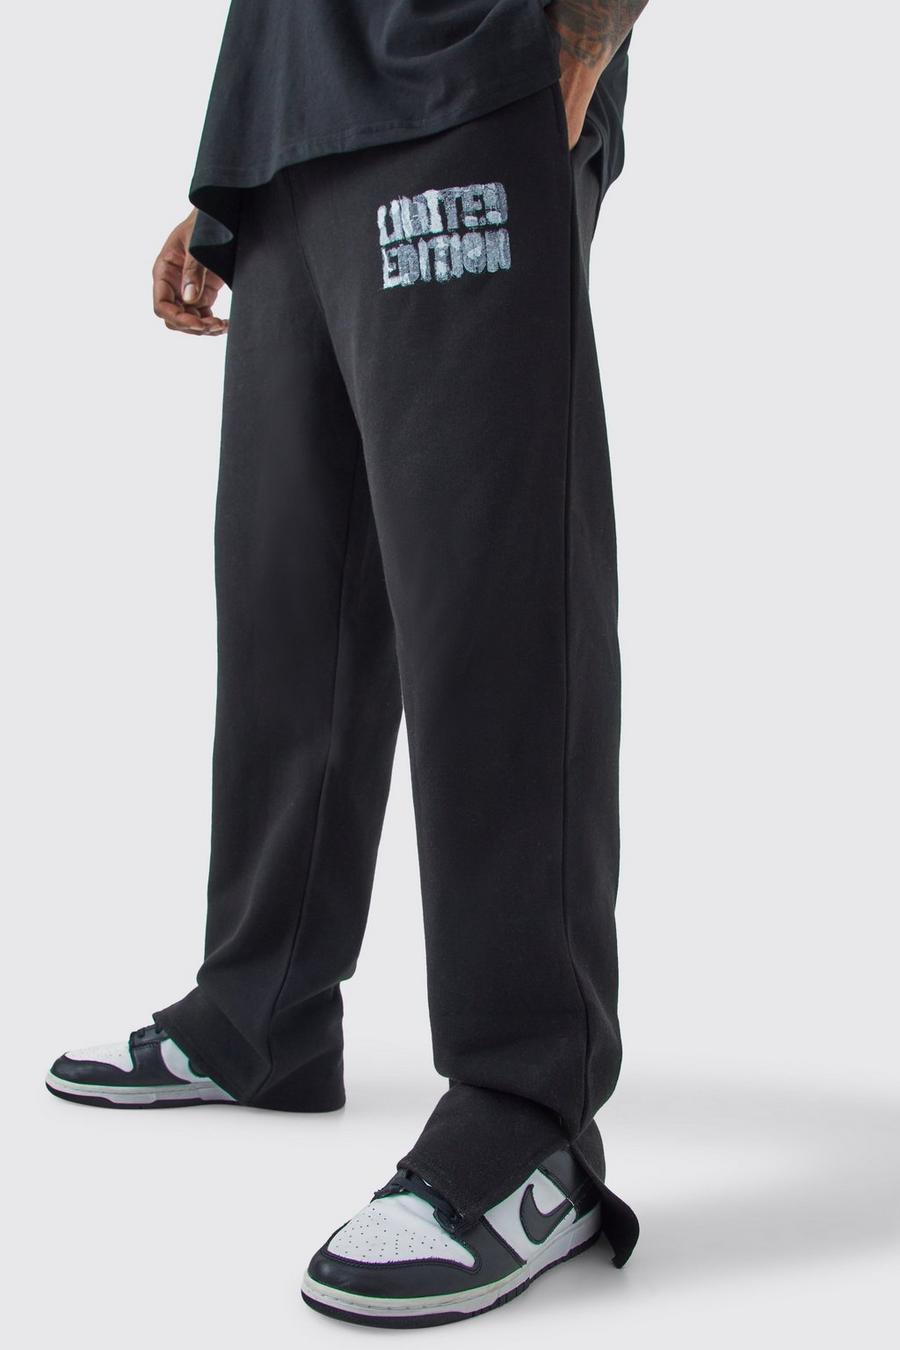 Pantaloni tuta Plus Size neri Limited Edition con spacco sul fondo, Black image number 1